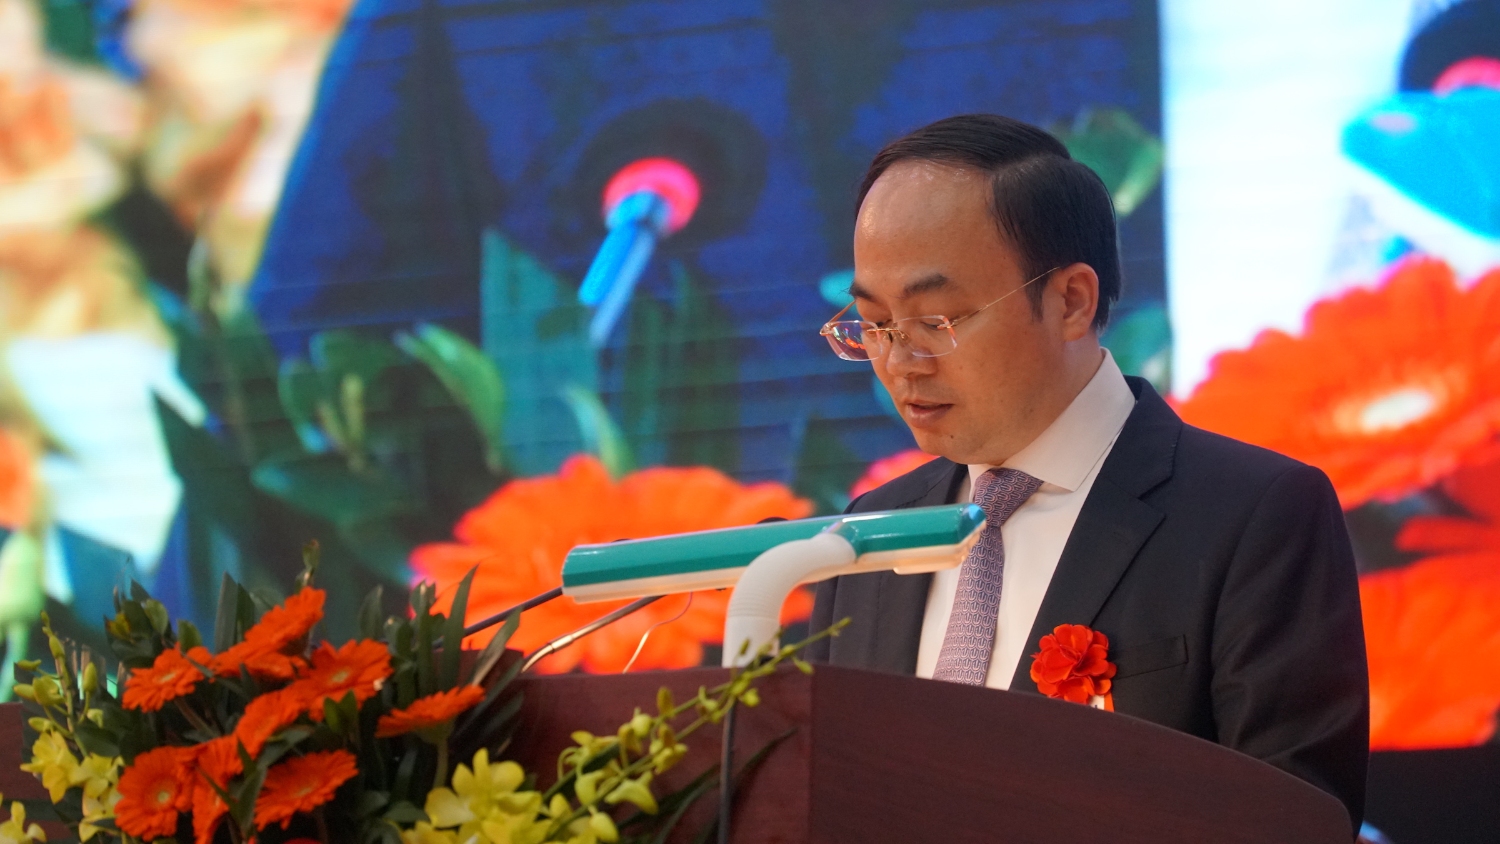 Đồng chí Nguyễn Đăng Bình, Phó Bí thư Tỉnh ủy, Chủ tịch UBND tỉnh Bắc Kạn, phát biểu tại Đại hội